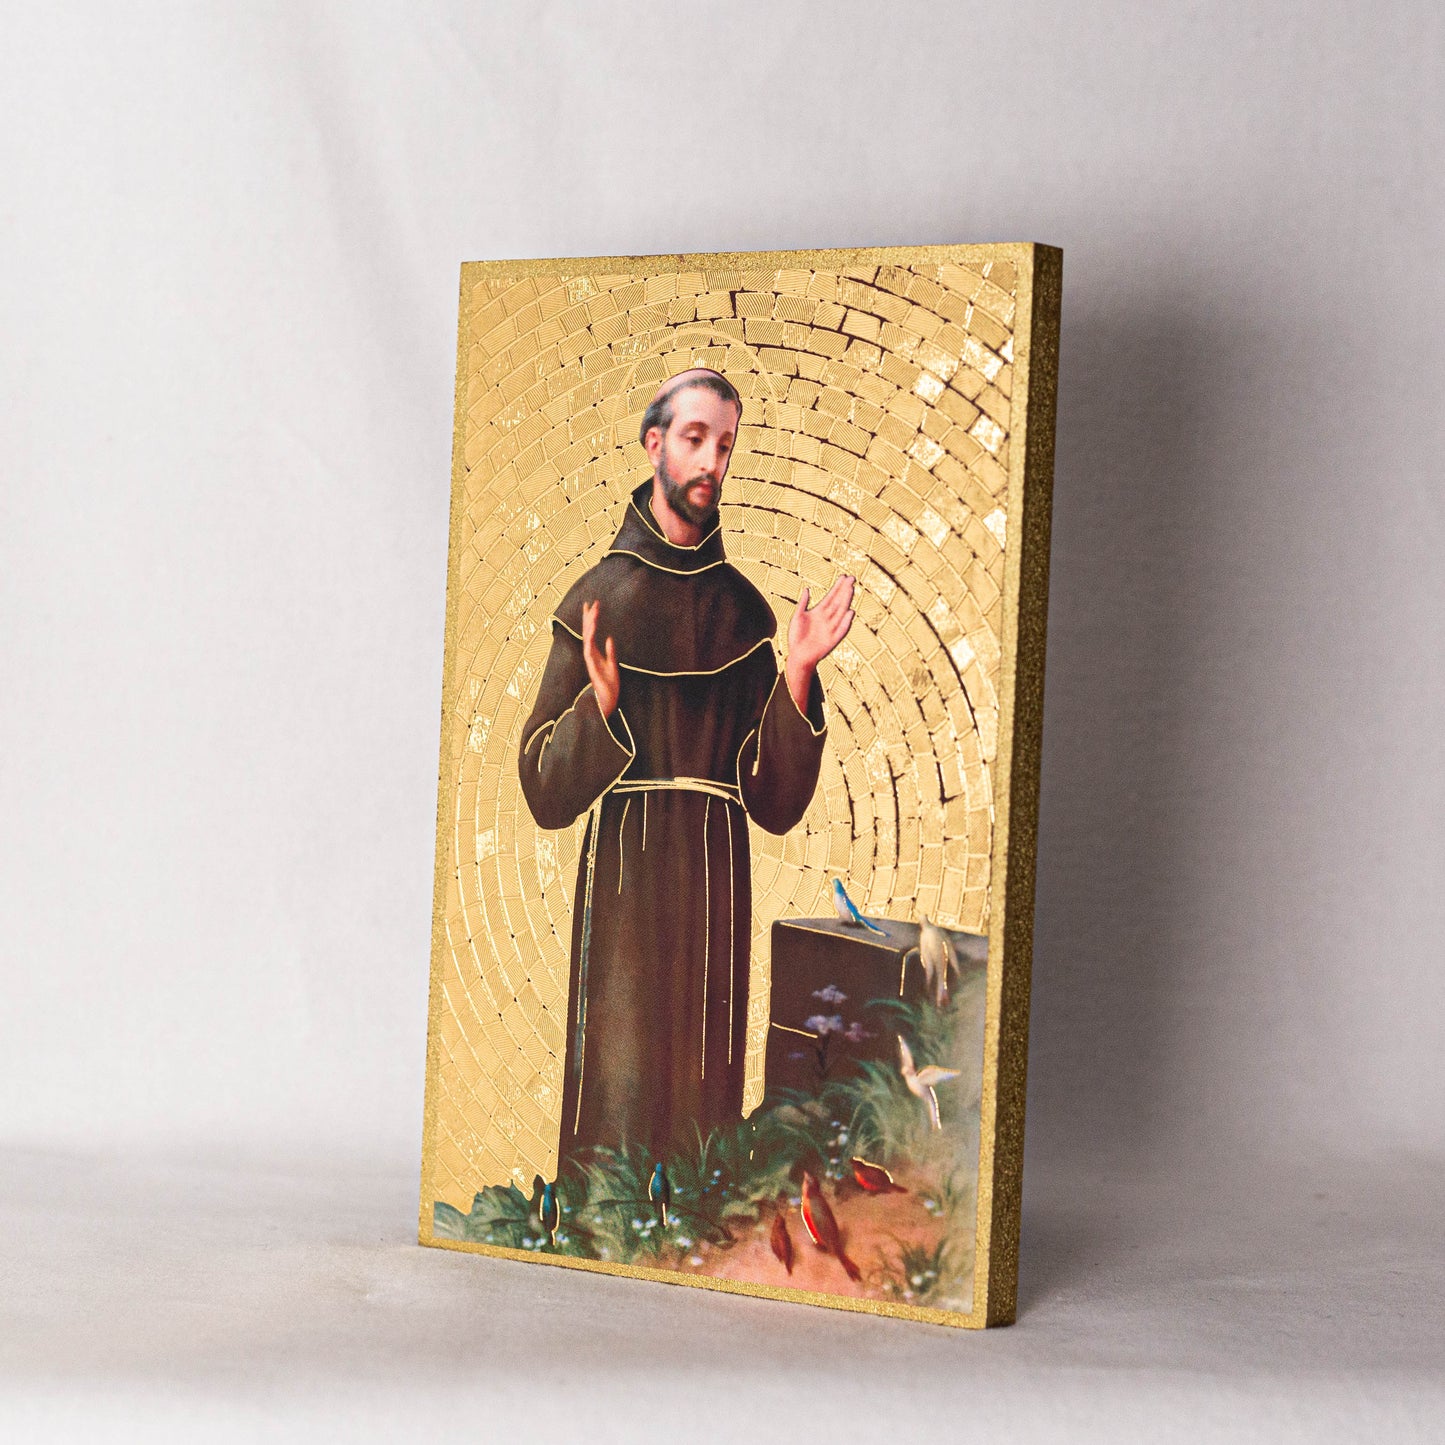 4" x 6" St. Francis Gold Foil Mosaic Plaque